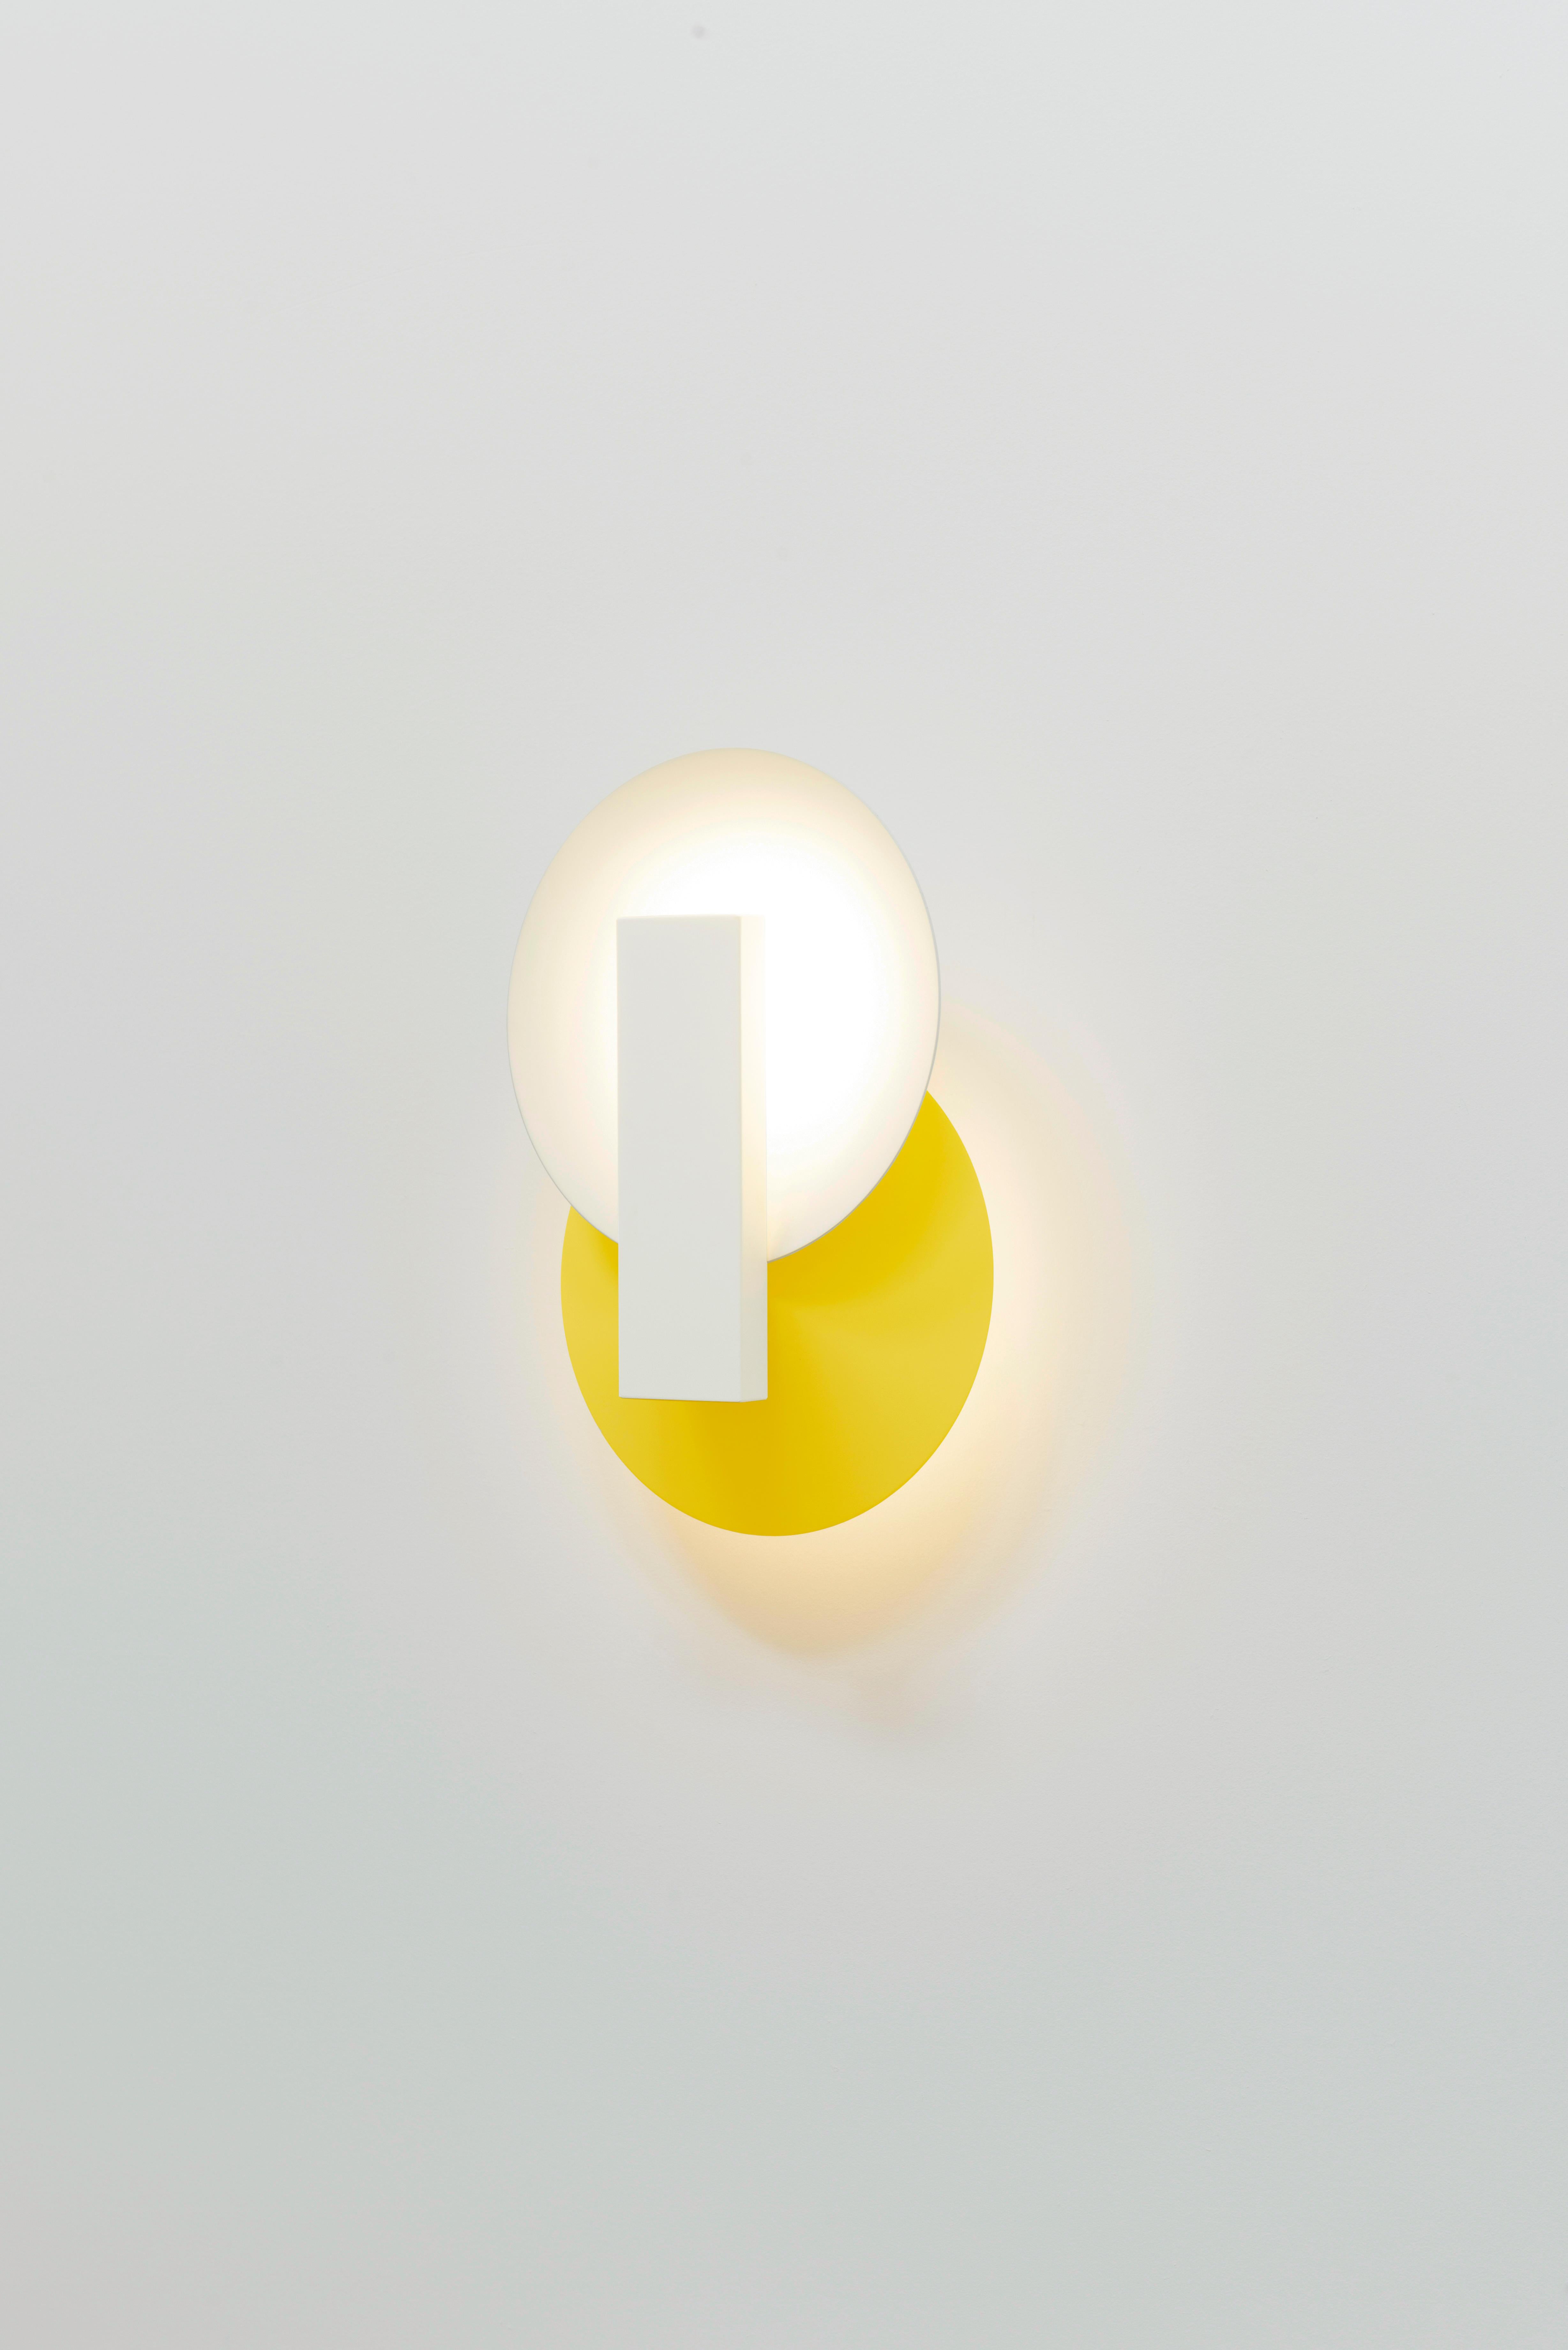 Orbe est une lampe murale à lumière indirecte, conçue pour apporter un éclairage doux à l'environnement.

La pièce a une structure simple, composée du minimum requis pour sa fonctionnalité : la boîte frontale abrite la source lumineuse et fournit le